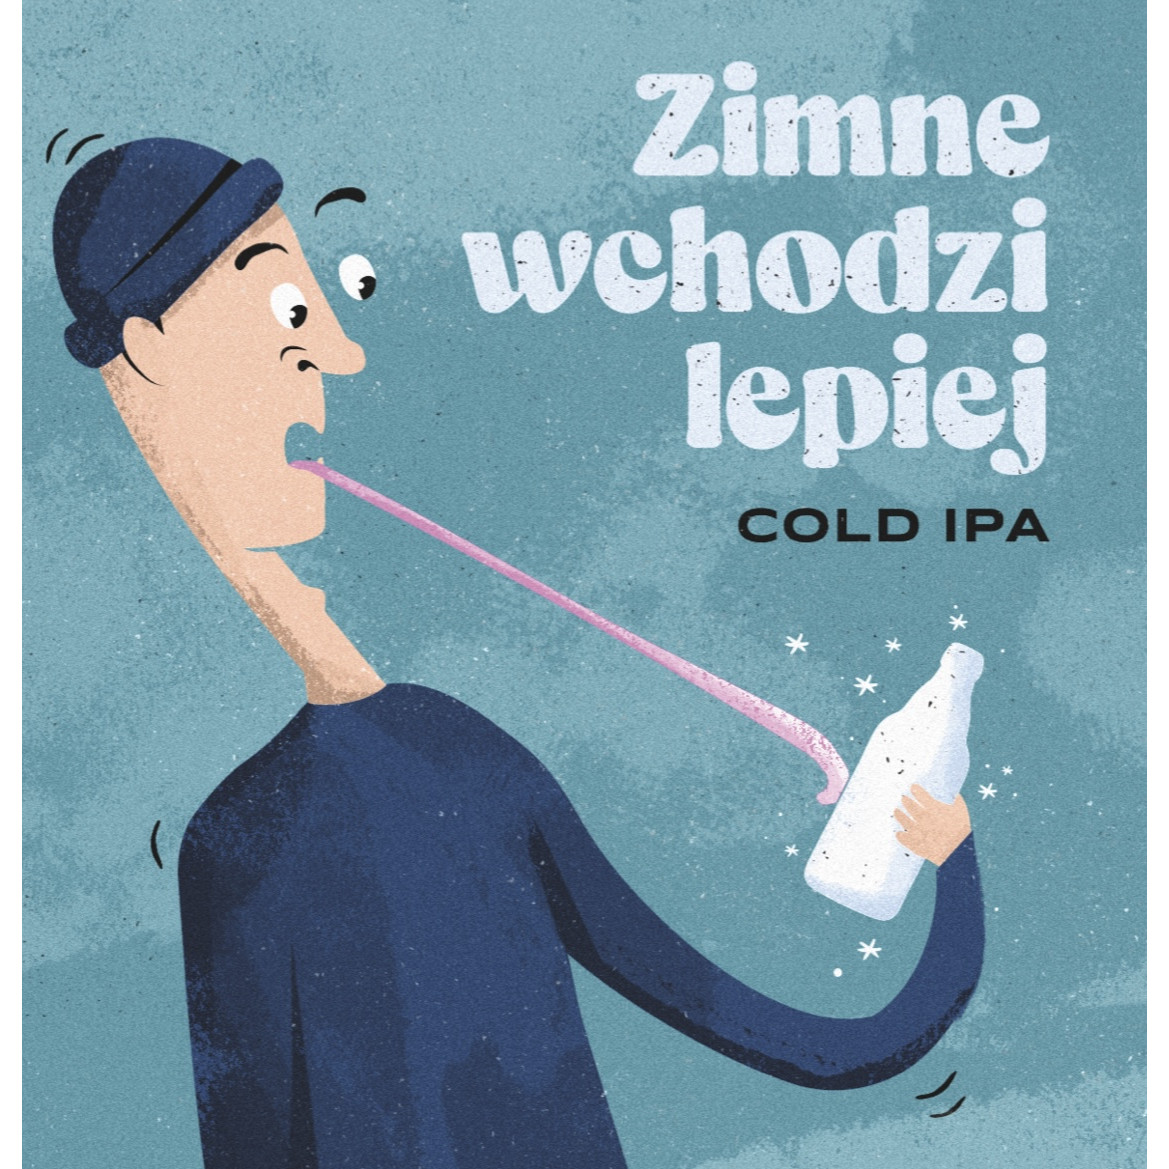 Kazimierz ZIMNE WCHODZI LEPIEJ – Cold IPA